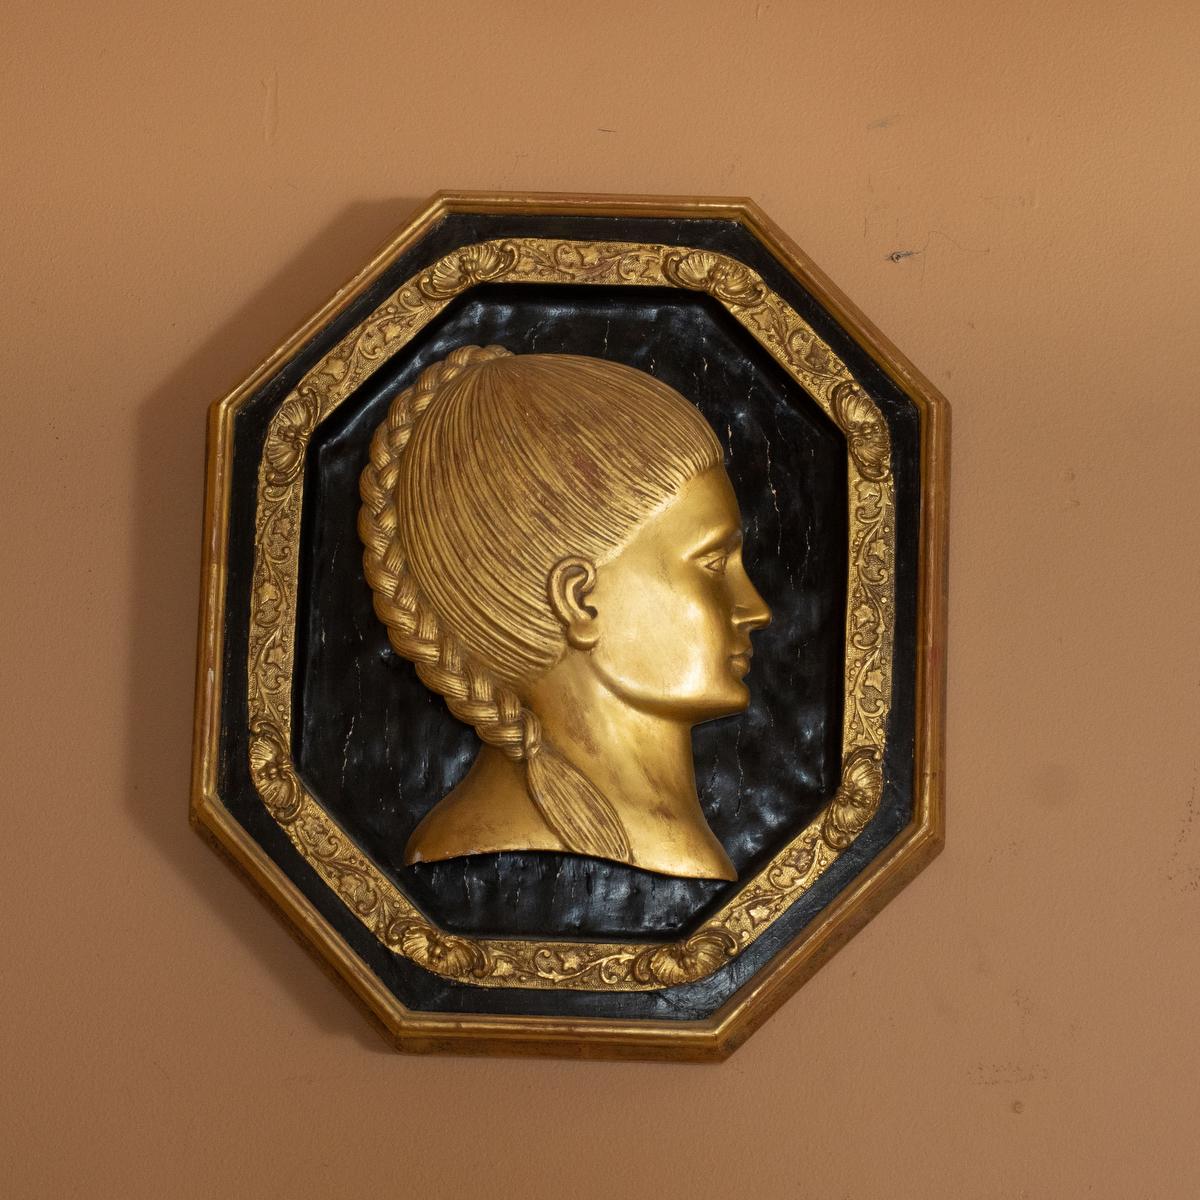 Paire de portraits féminins sculptés à la feuille d'or 22kt avec bordures filigranées par le maître ébéniste Carlos Villegas.